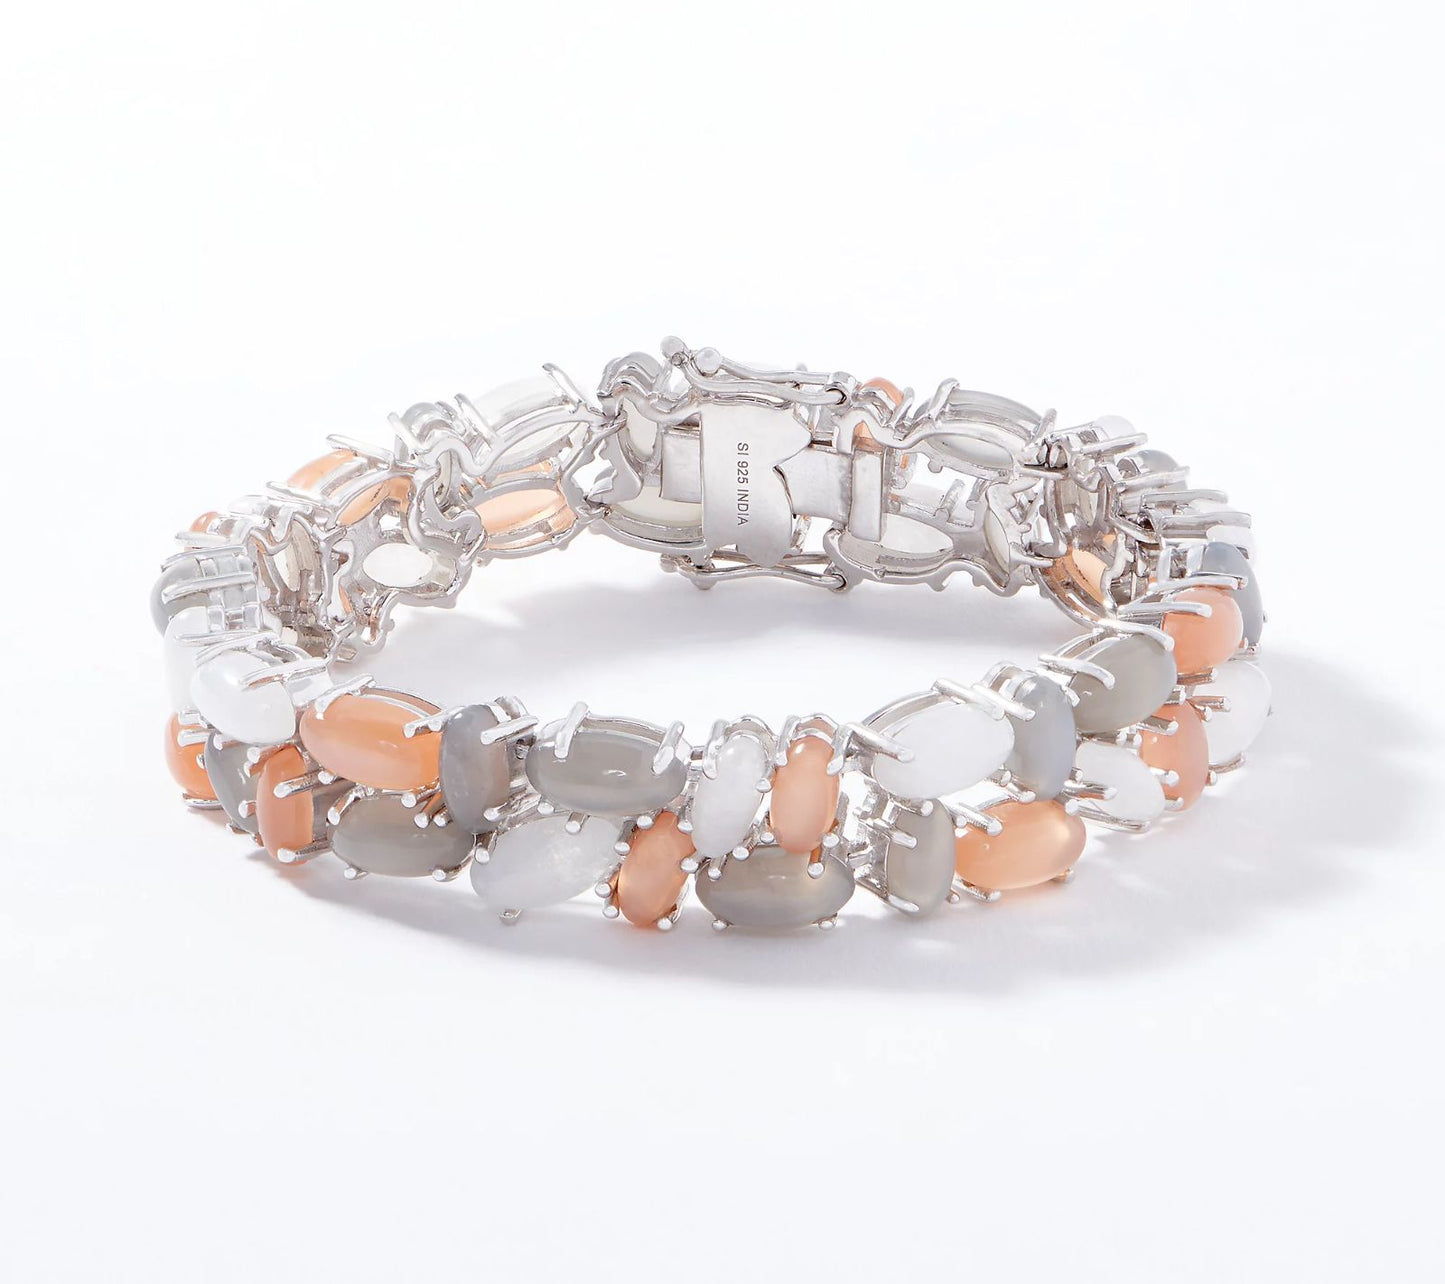 Affinity Gems Multi-Color Moonstone Bracelet, Sterling Silver, Size 7-1/4"